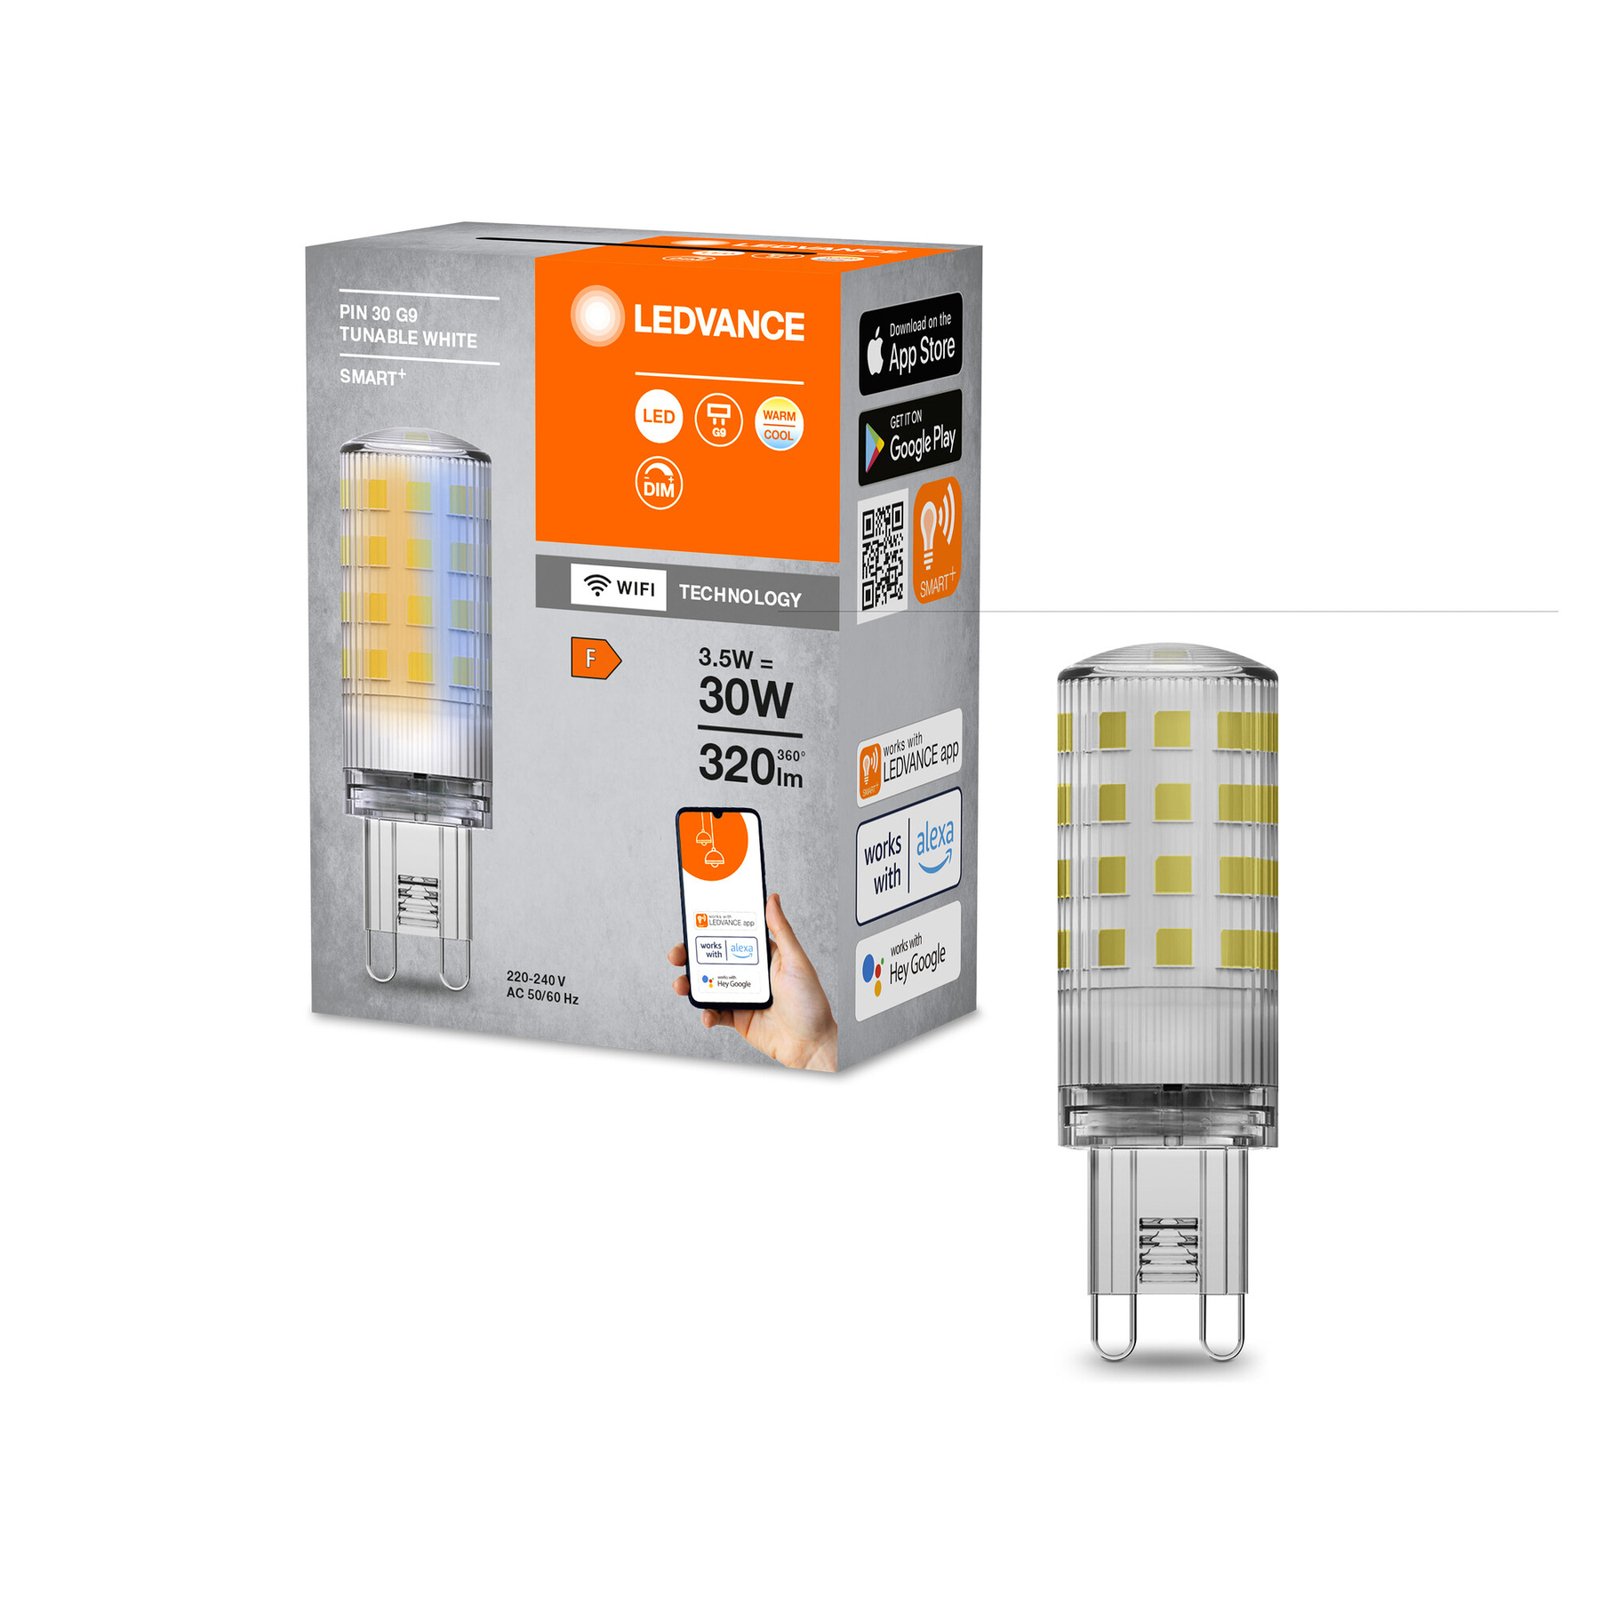 LEDVANCE SMART+ WiFi LED lamp G9, 3,5 W, CCT dimbaar